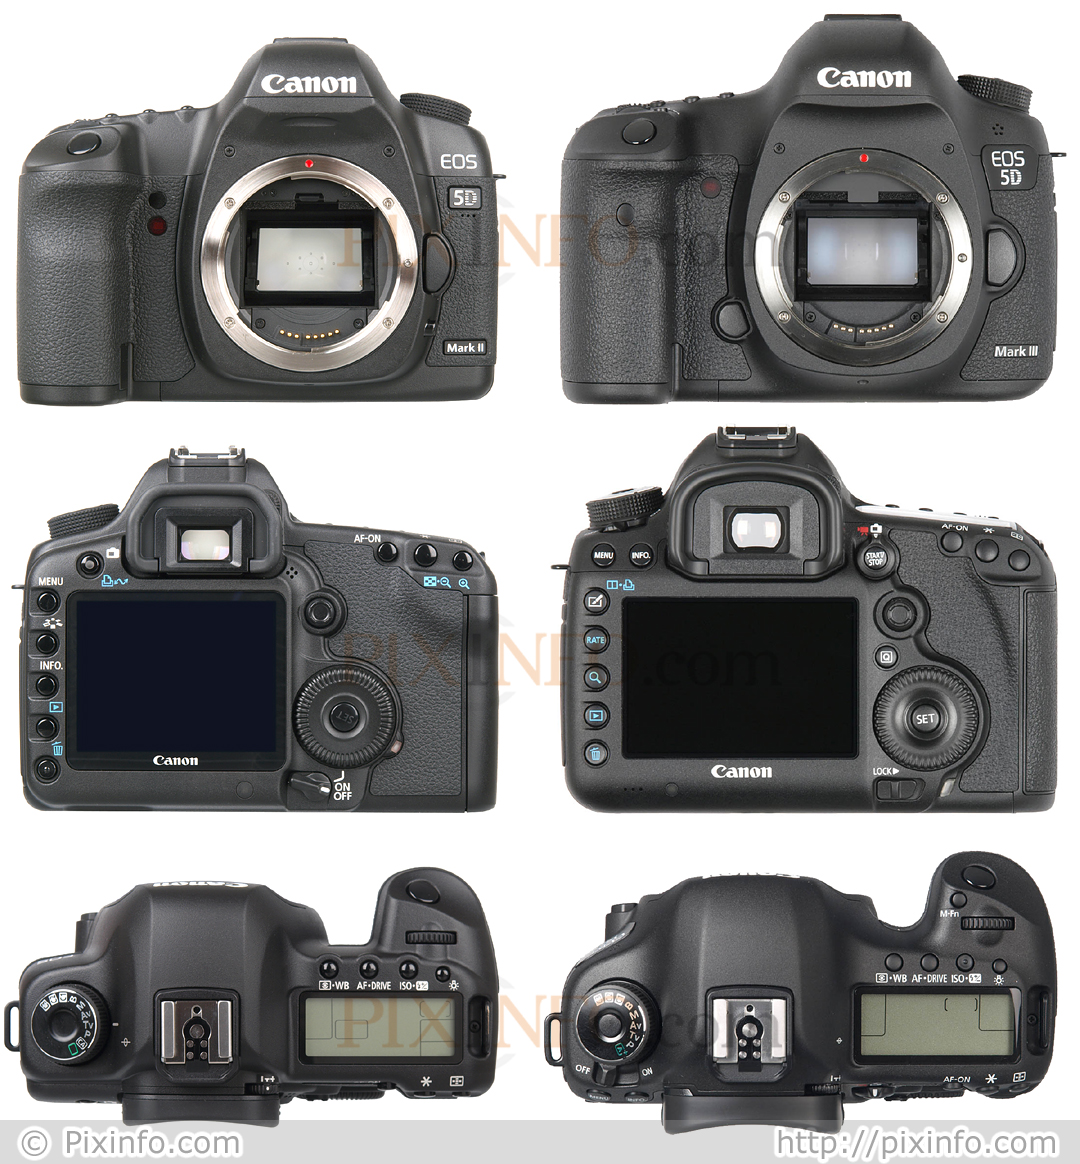 Canon 5d vs 5d mark